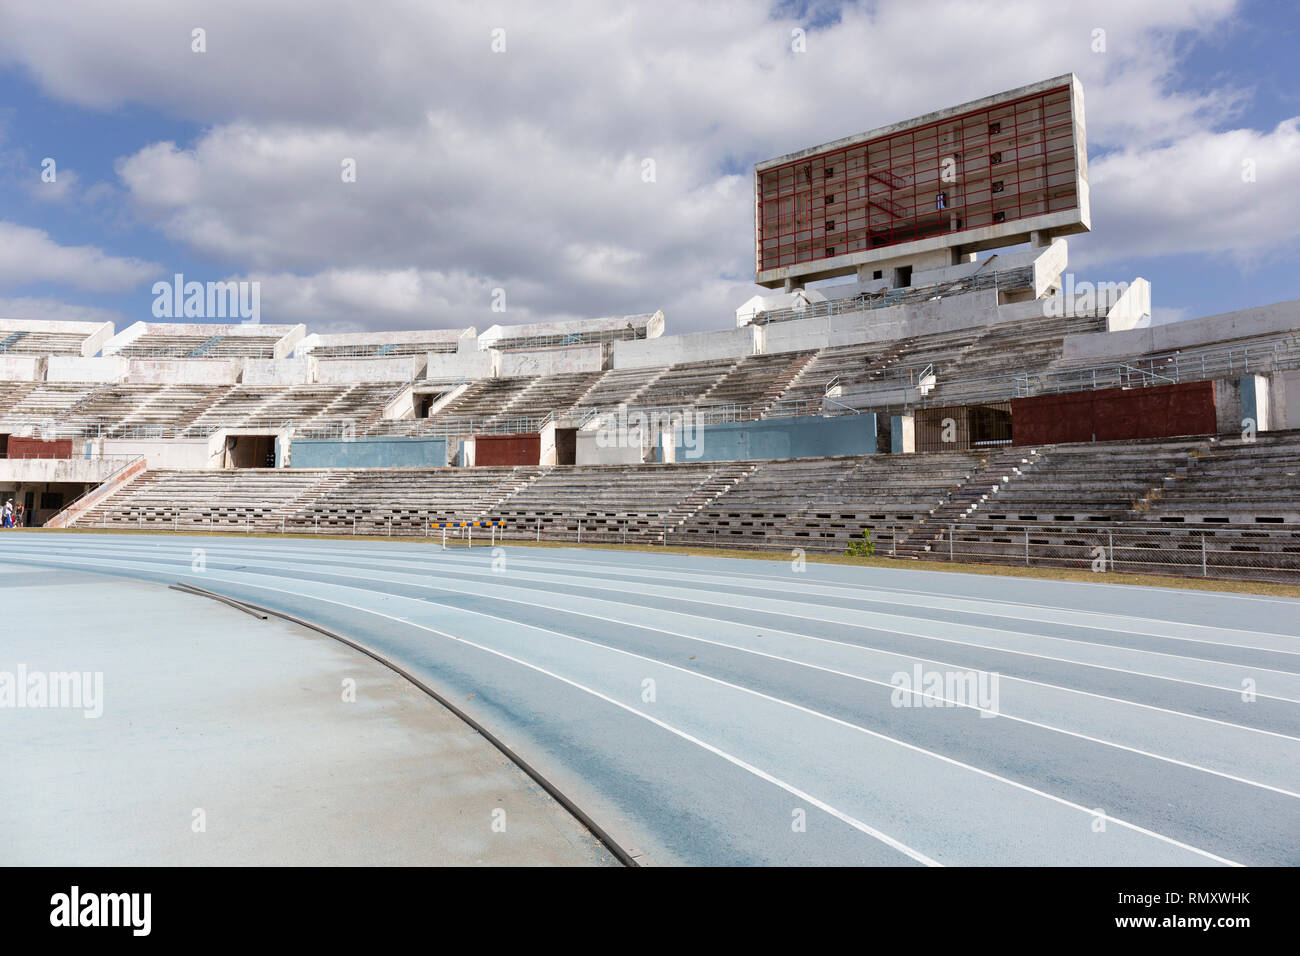 Alte athletic Stadium. Ausführen von gesunden Lebensstil Konzept. Blaue sport Track für die Ausführung auf Stadion mit Tribüne Stockfoto